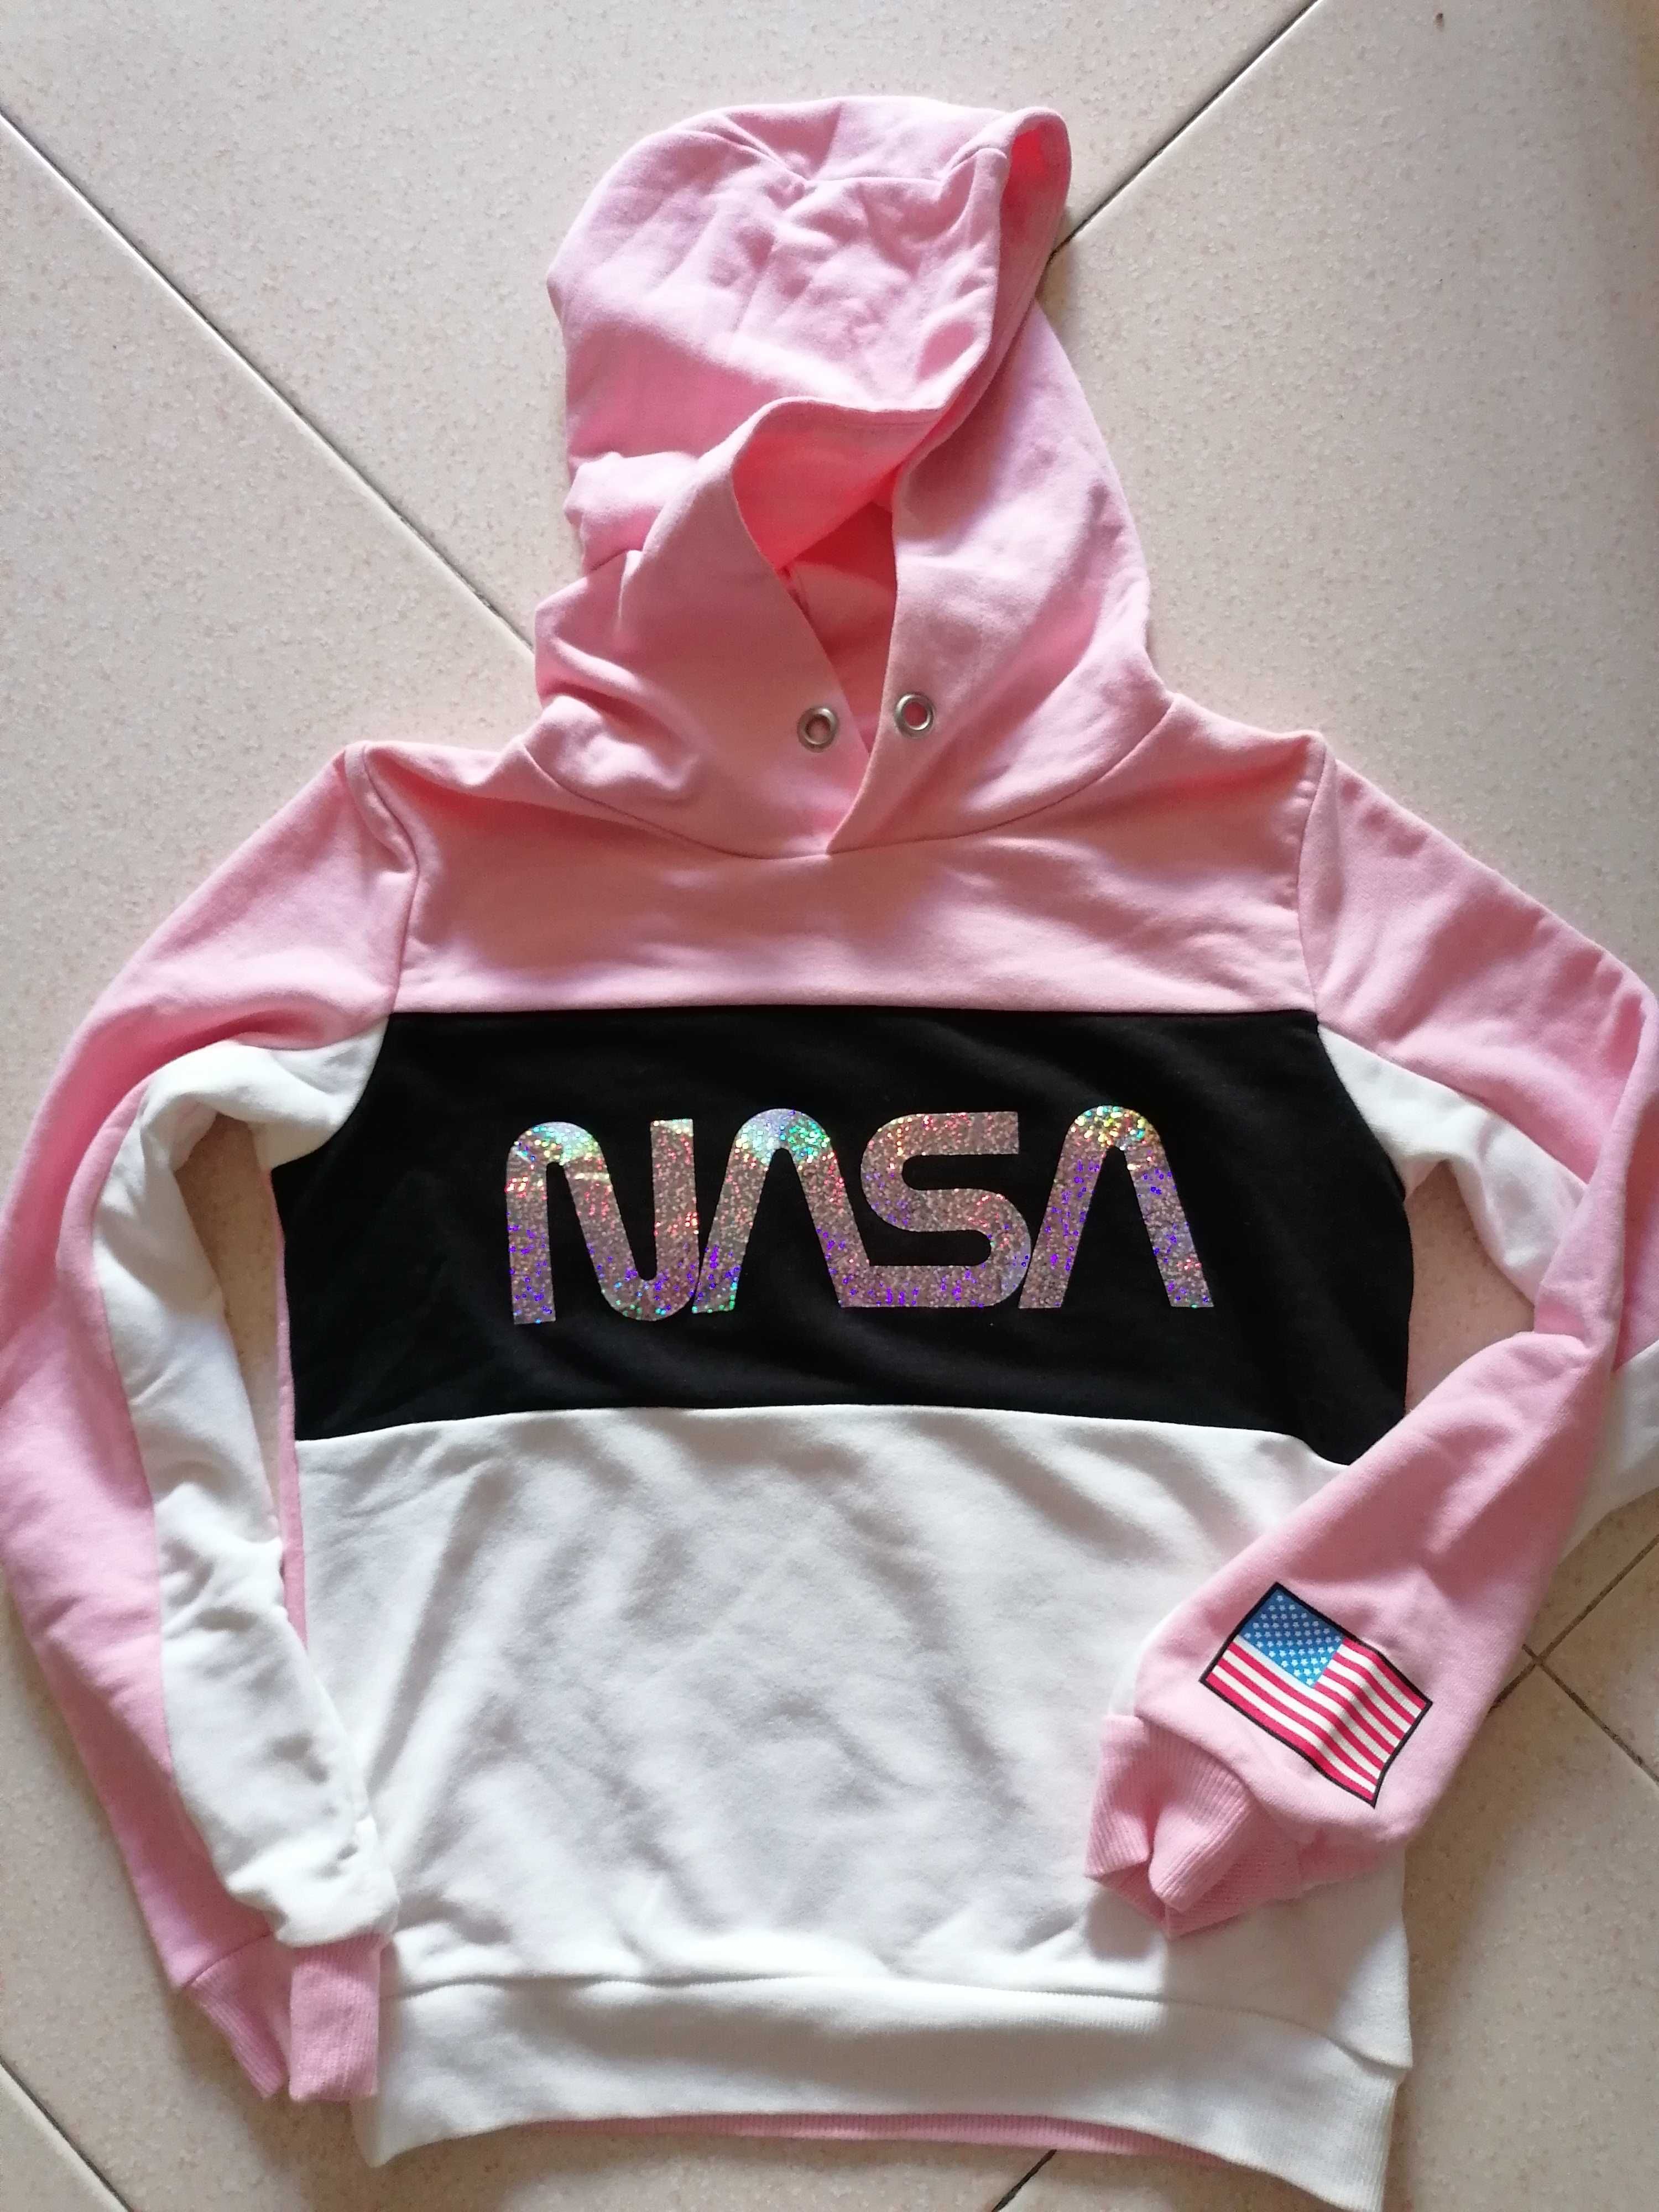 Sweat-shirt/camisola fato de treino criança da NASA 9-10 anos